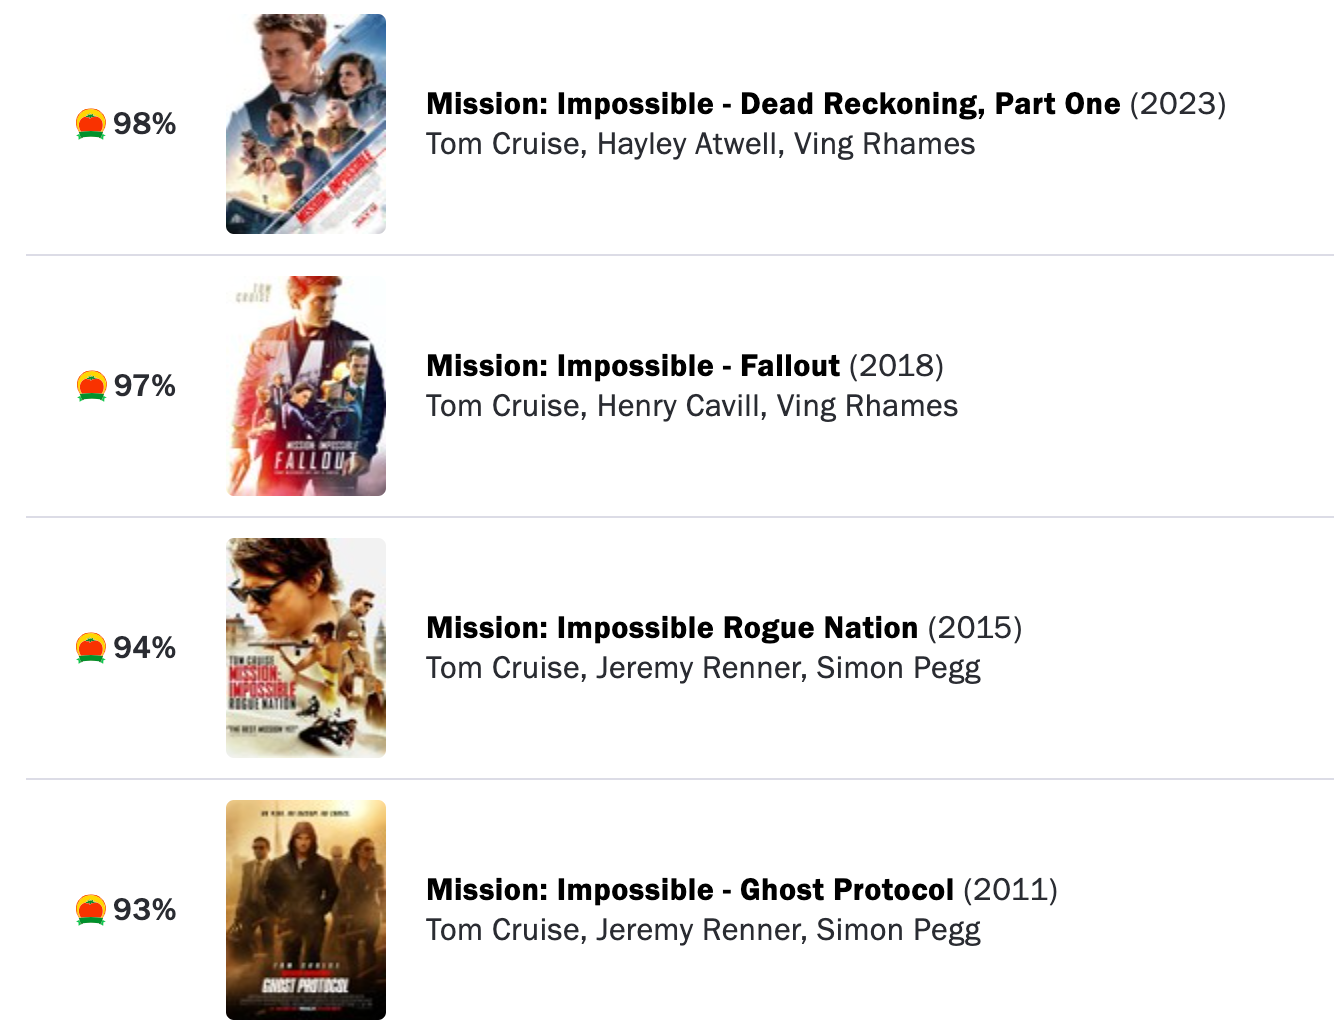 Las últimas películas de ‘Mission: Impossible’ han obtenido puntuaciones muy altas en Rotten Tomatoes